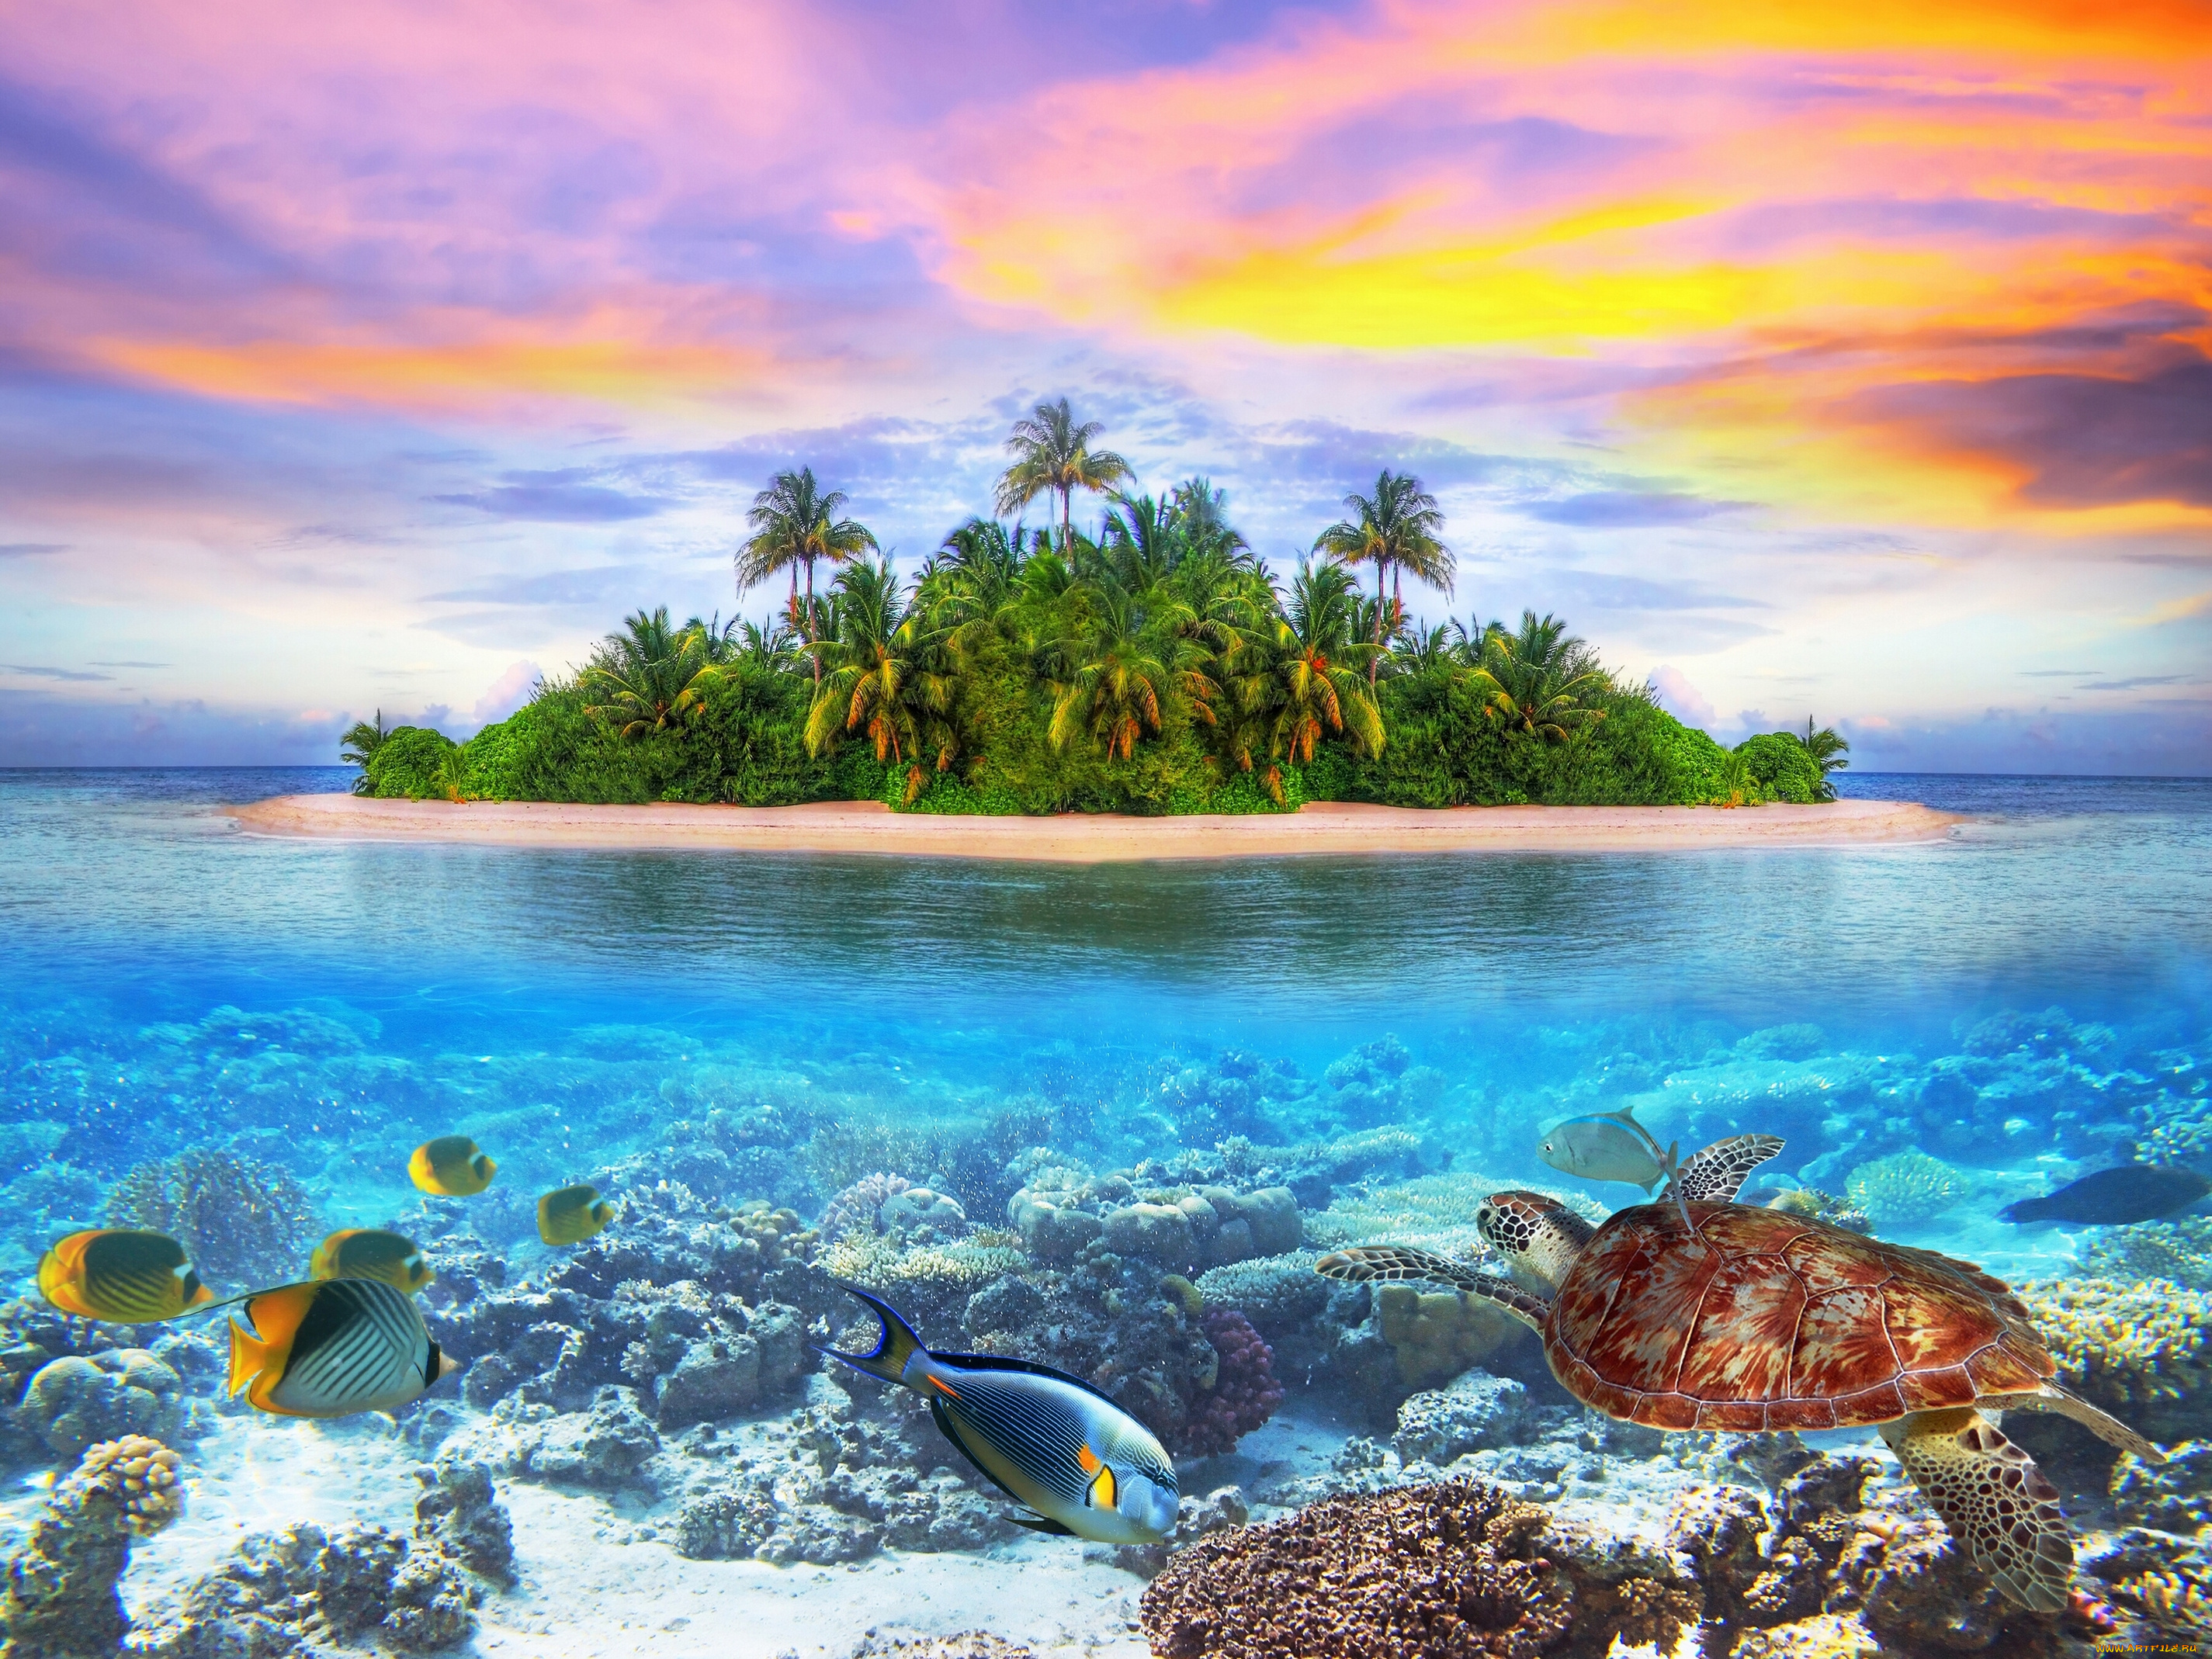 maldives, природа, тропики, indian, ocean, arabian, sea, мальдивы, индийский, океан, аравийское, море, остров, морское, дно, рыбы, черепаха, кораллы, закат